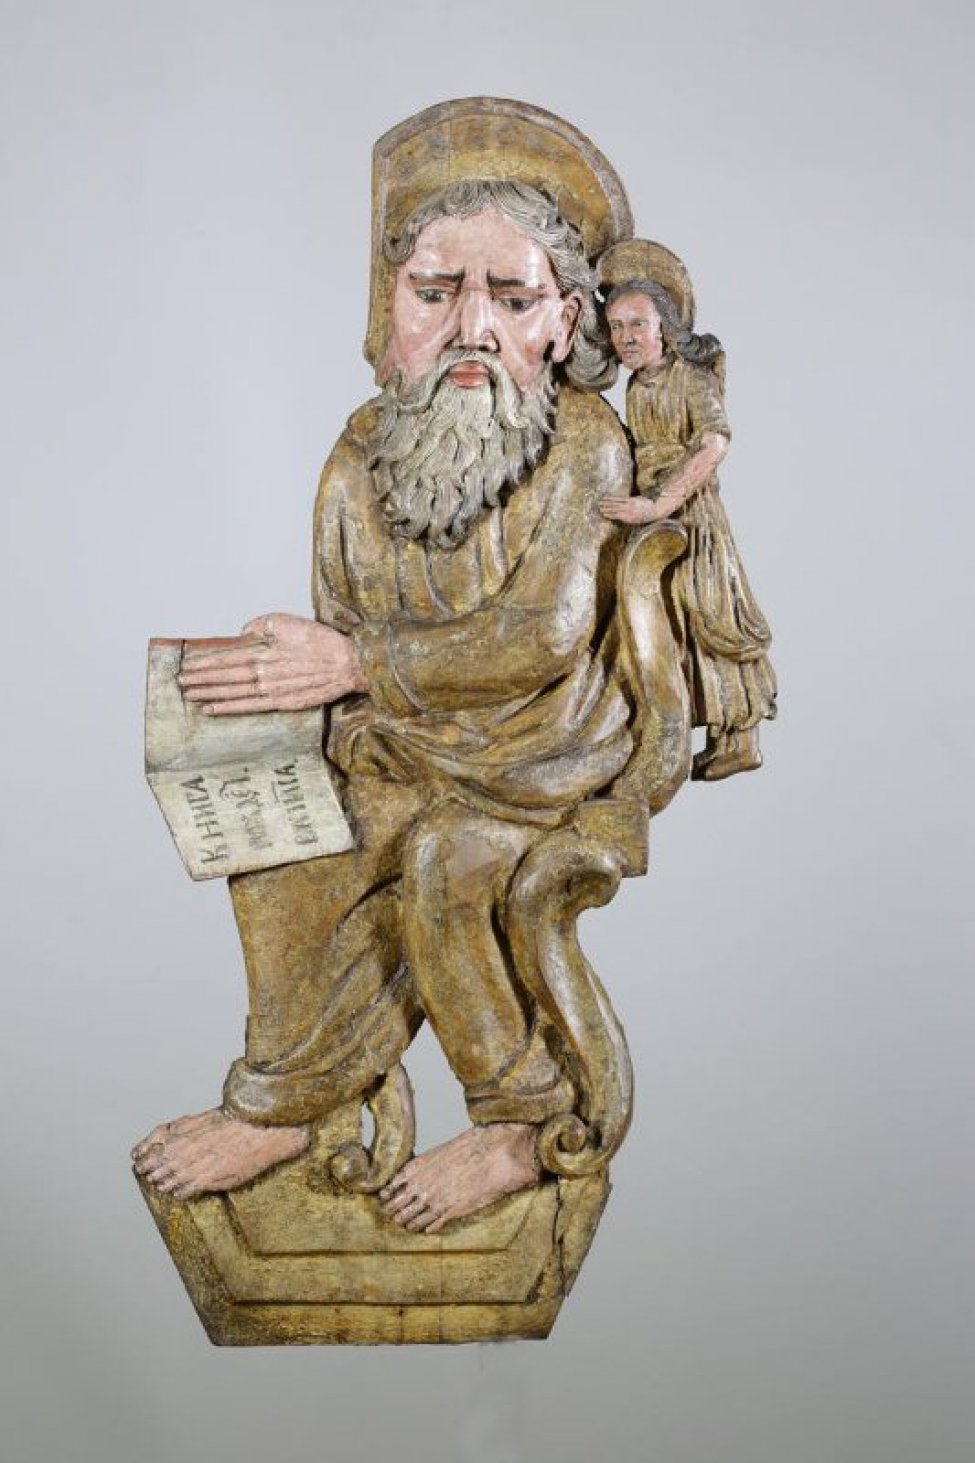 Евангелист изображен сидящим на стуле, корпус и руки повернуты вправо. На раскрытом Евангелие живописно написано: "книга рождеiва iиса". С левого бока - фигура ангела. На голове - нимб.